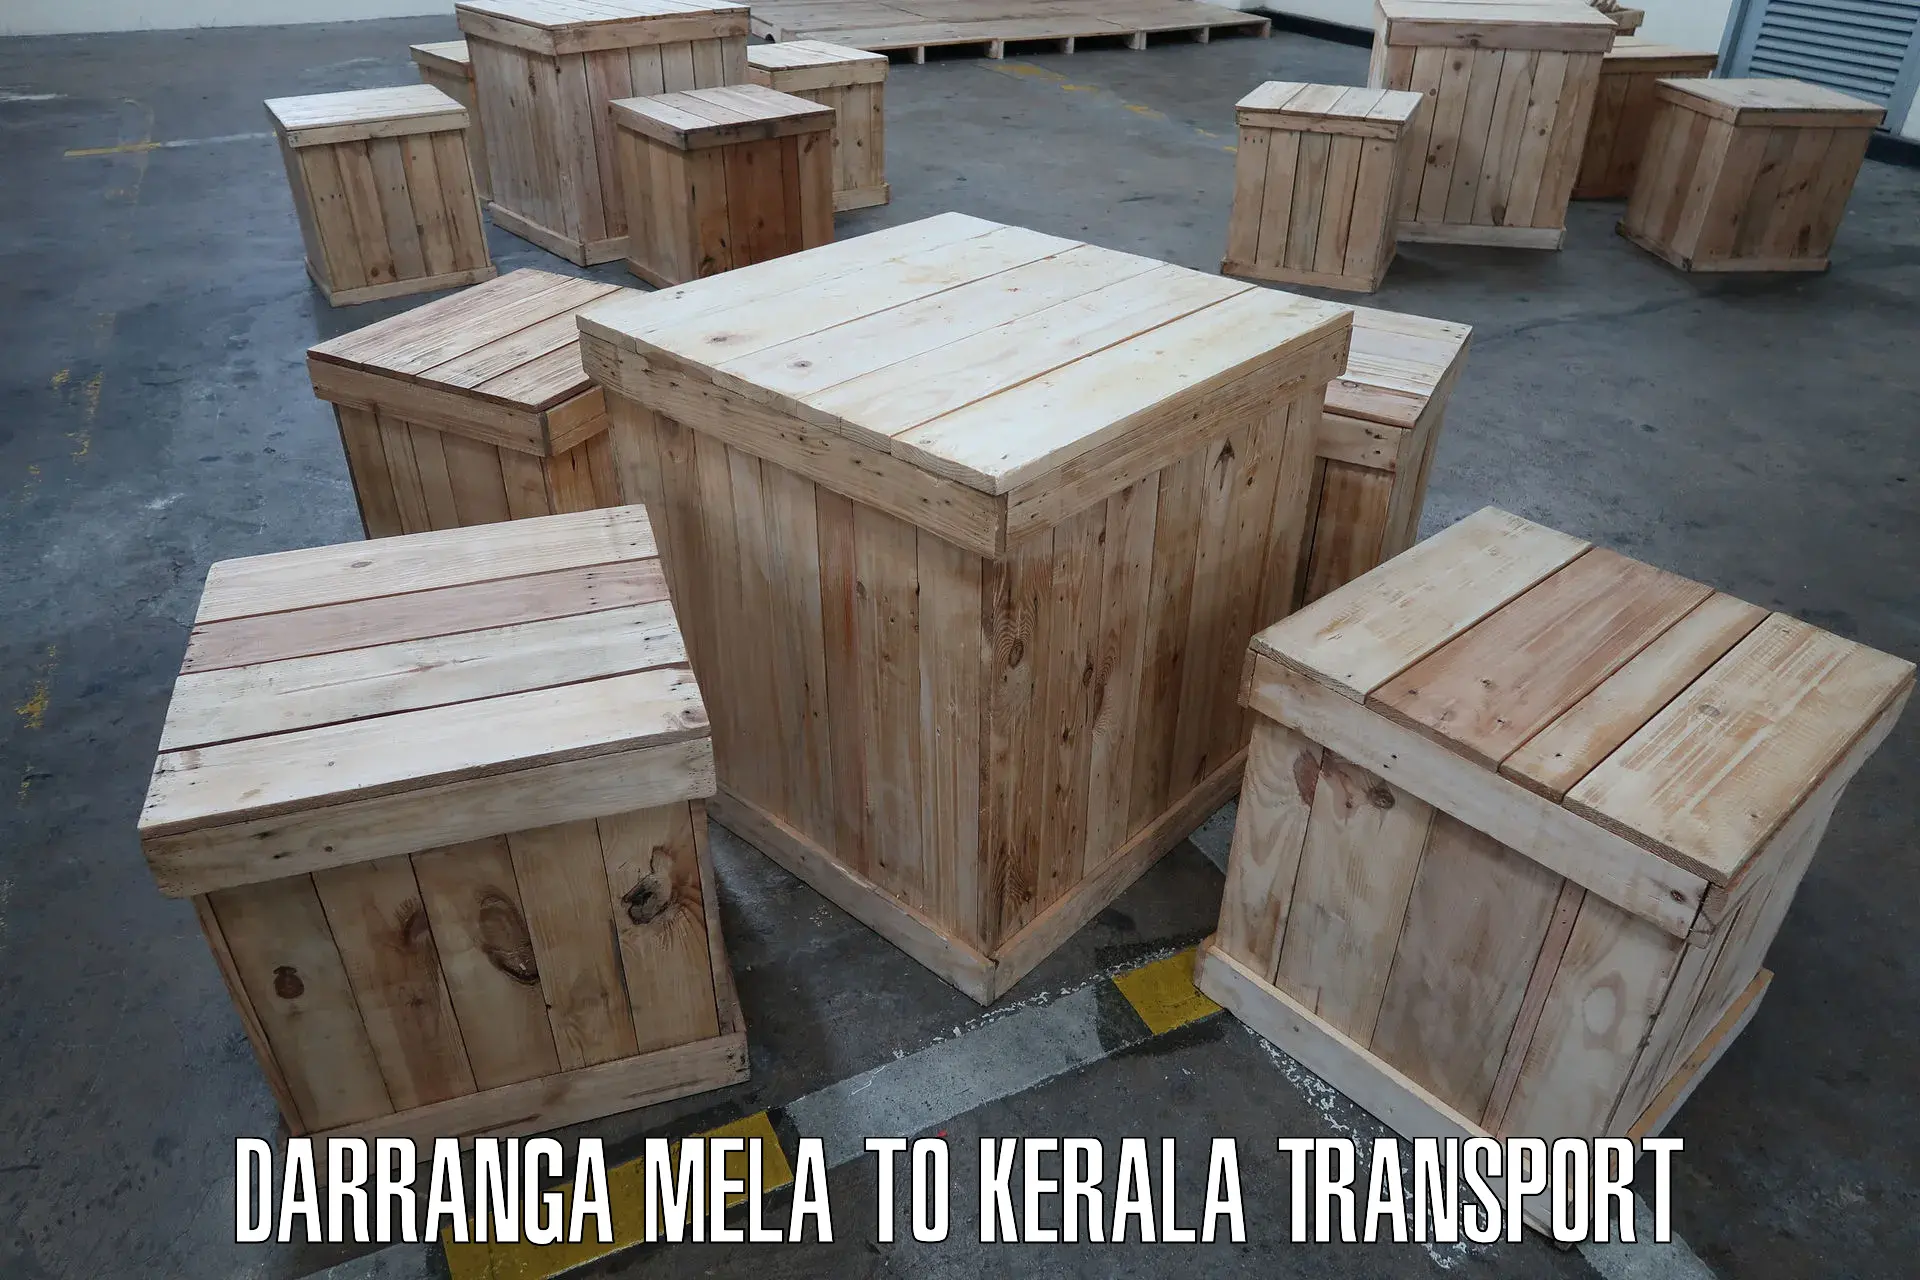 Truck transport companies in India Darranga Mela to Nenmara